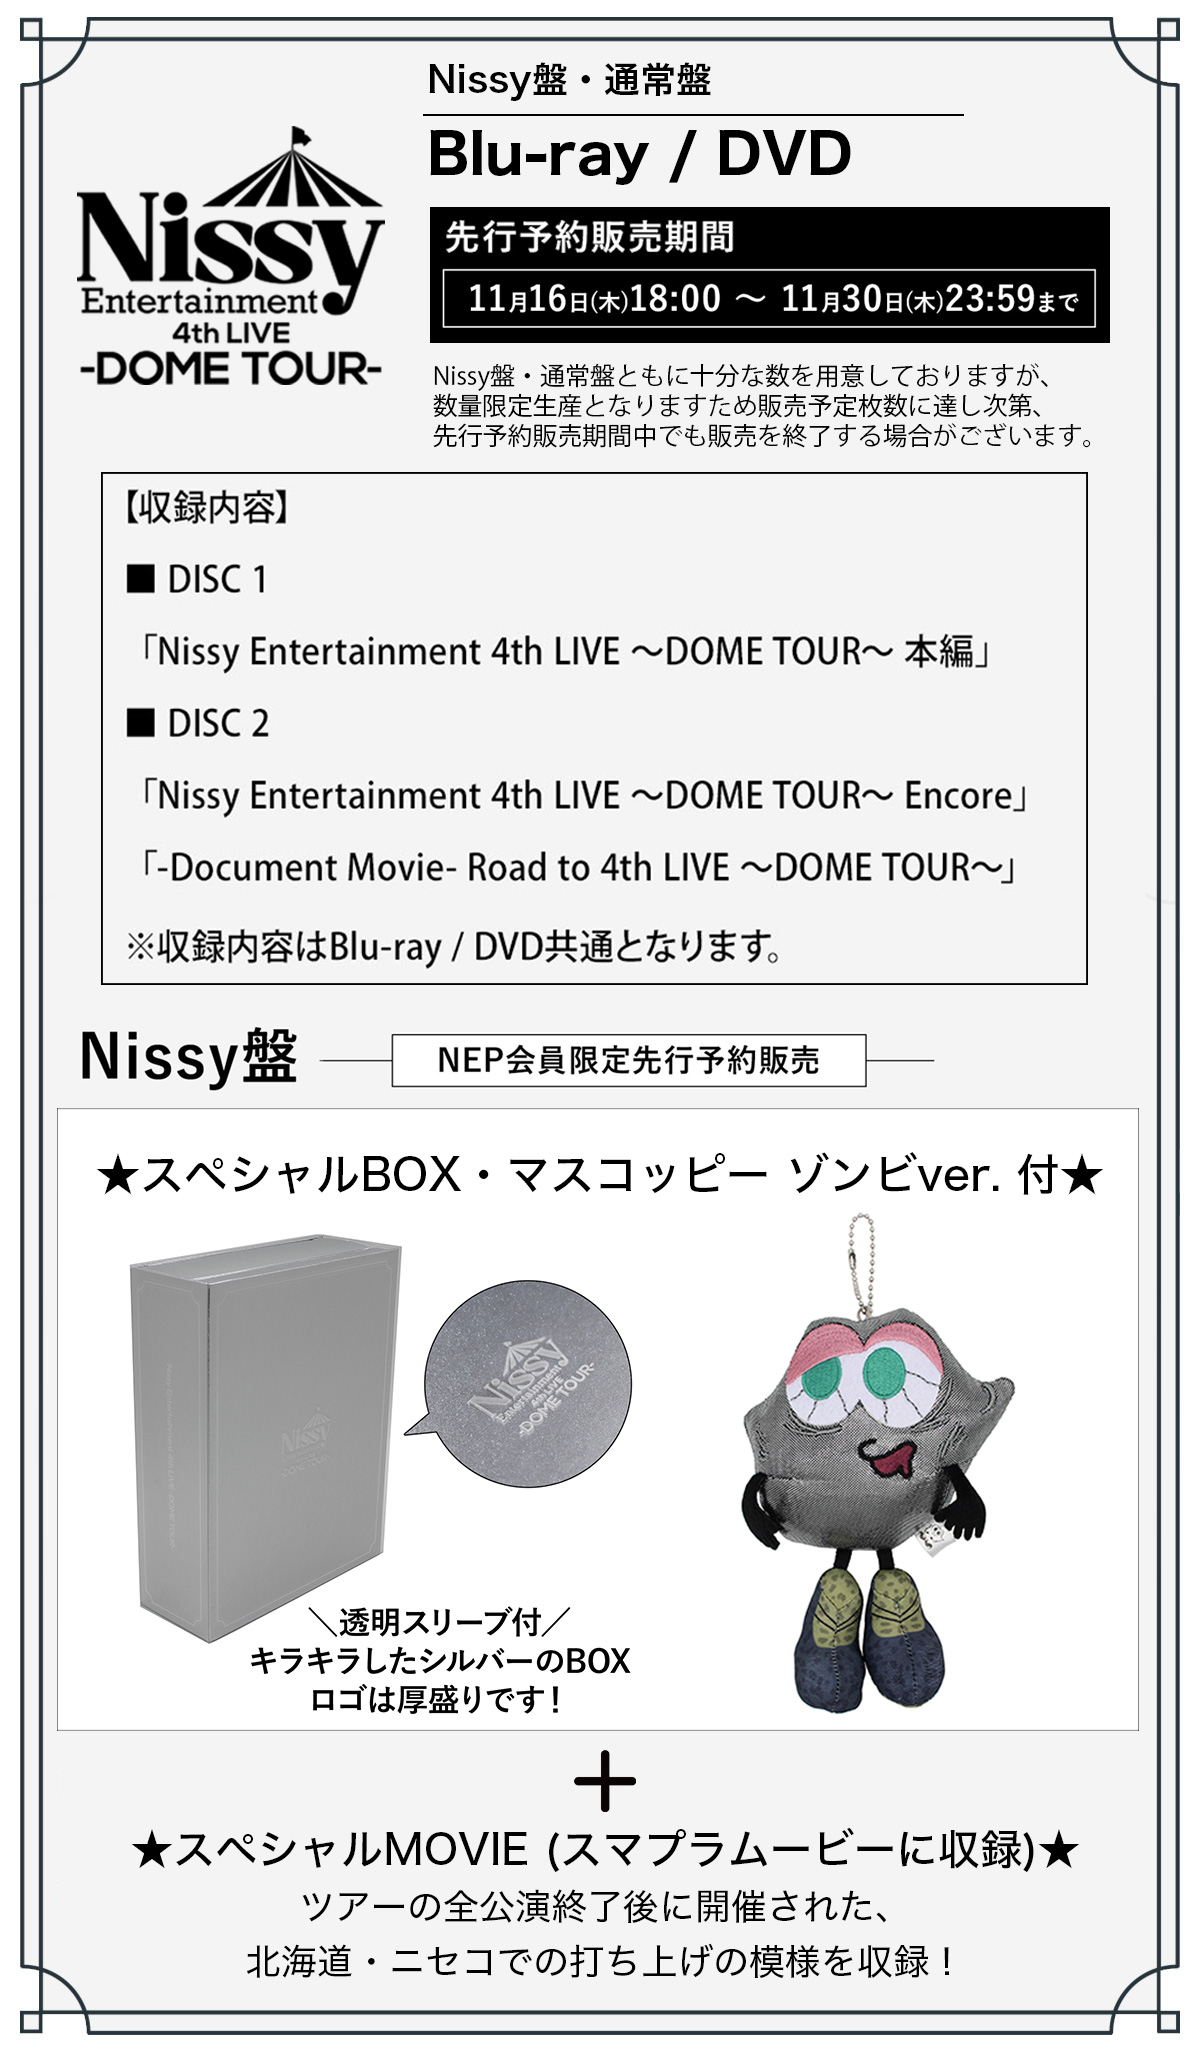 Nissy_staff (@NissyStaff) / X